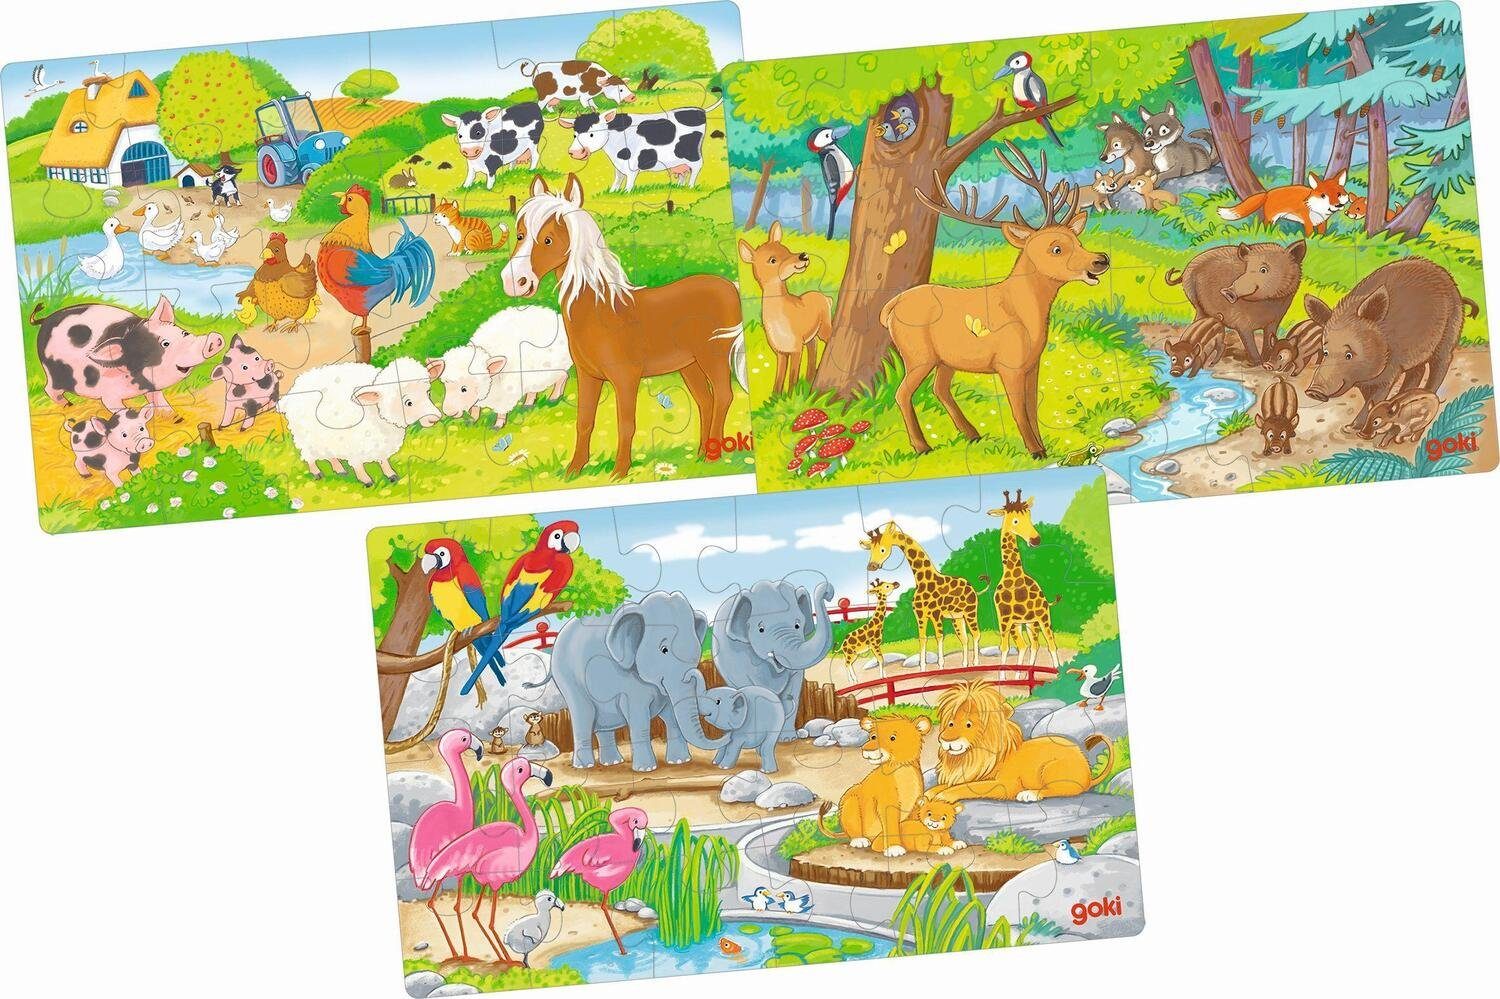 Gollnest & Kiesel Puzzle Puzzles Tiere, Puzzleteile